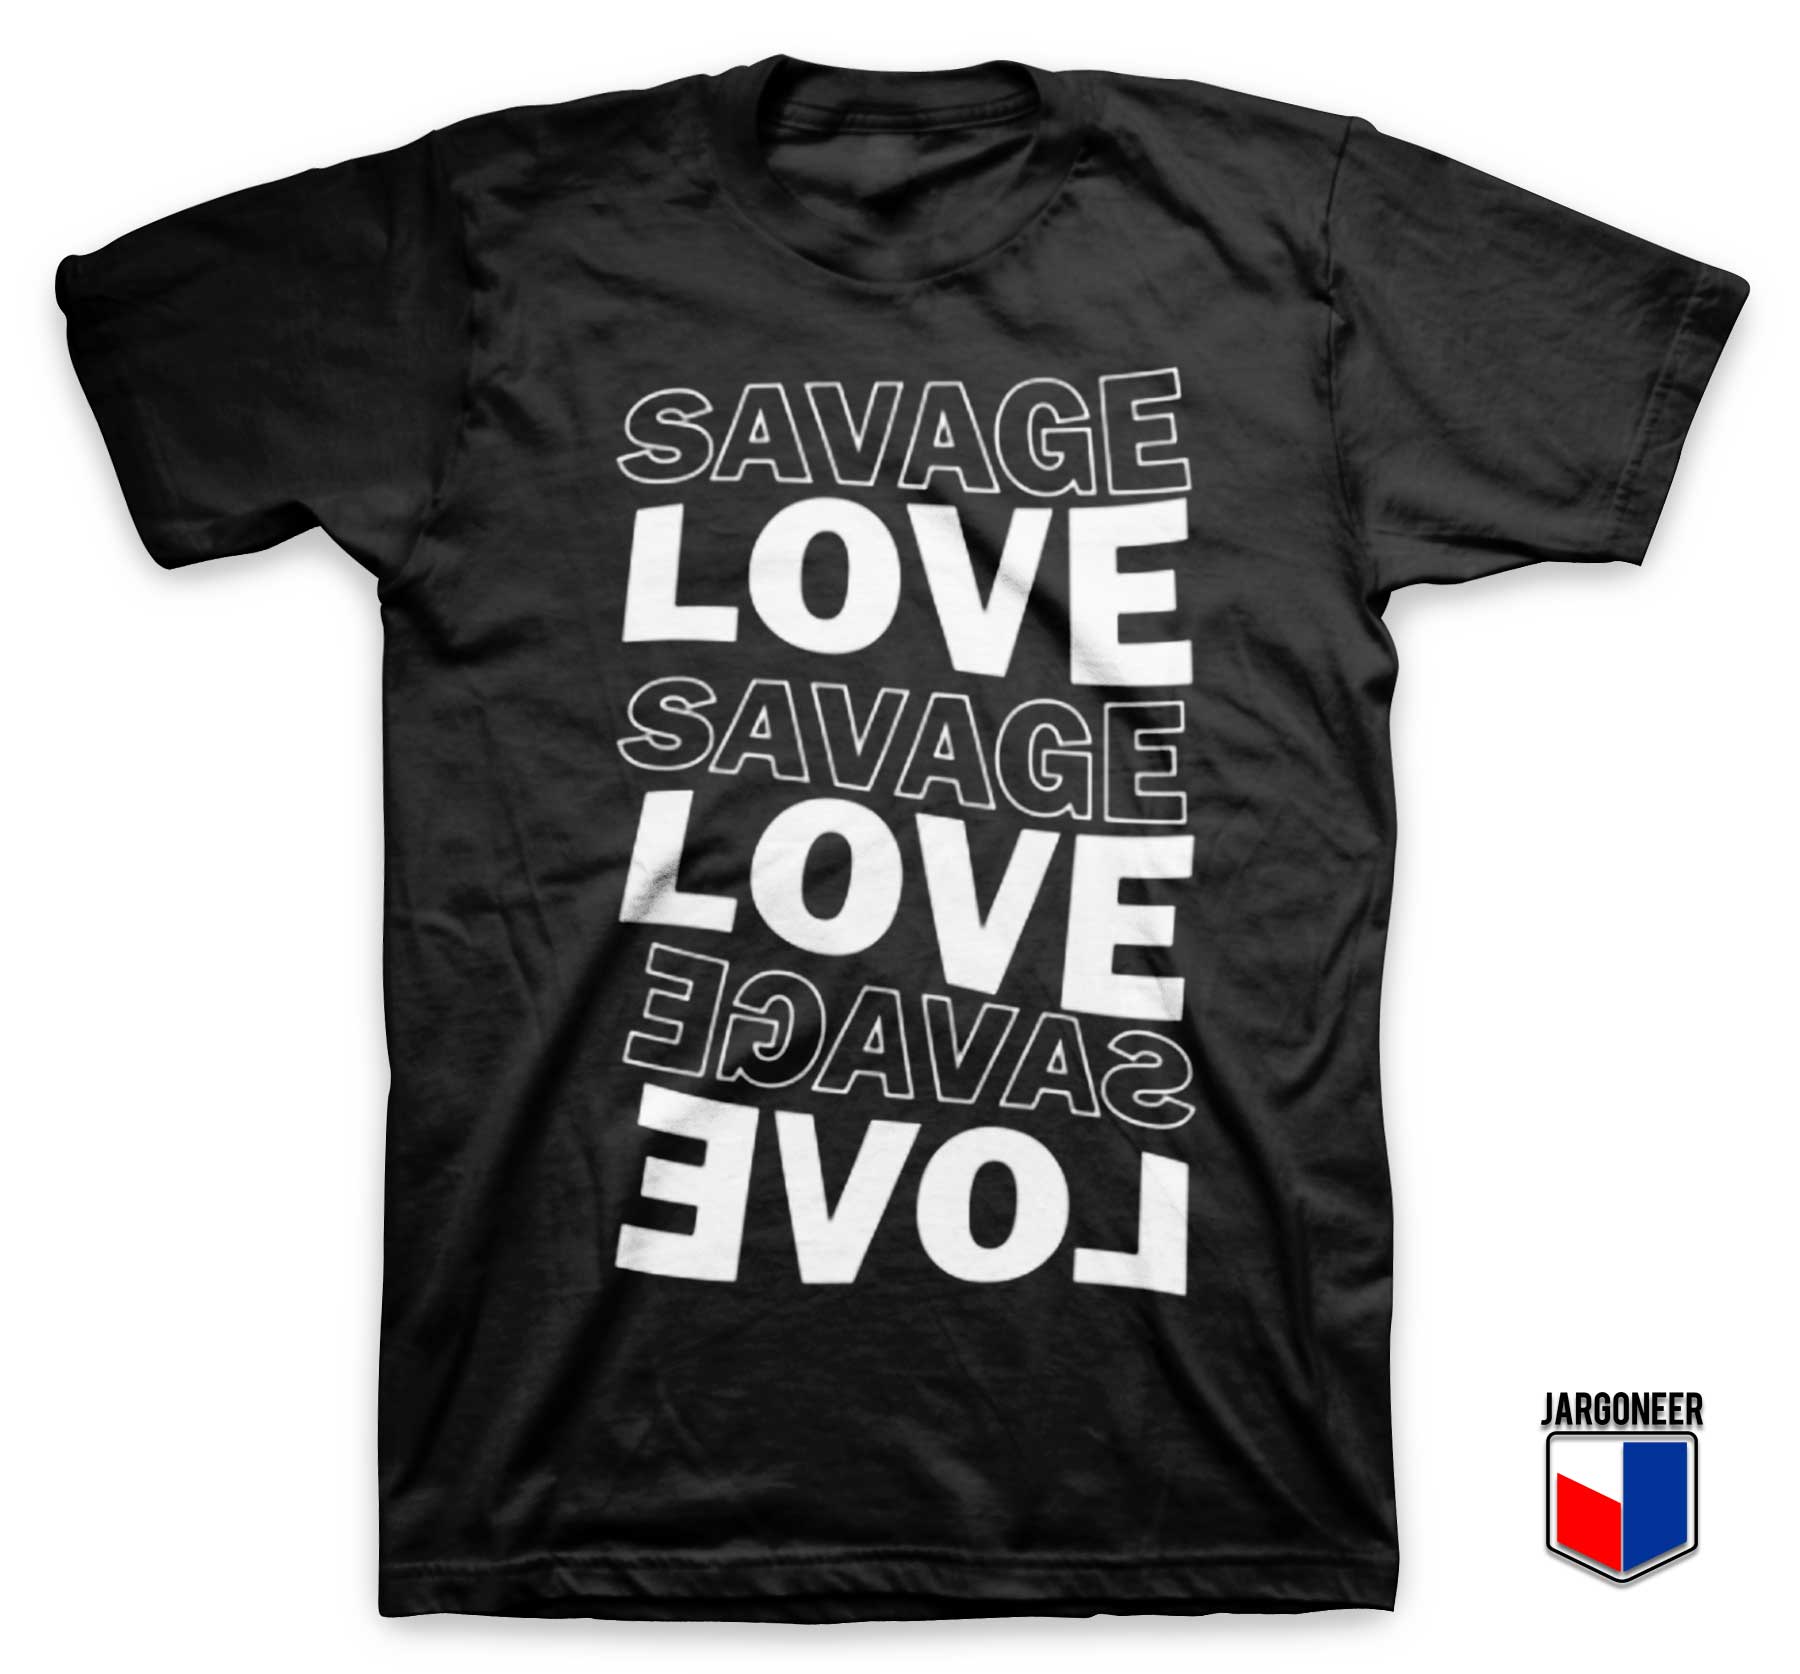 Savage Love Music T Shirt - Shop Unique Graphic Cool Shirt Designs